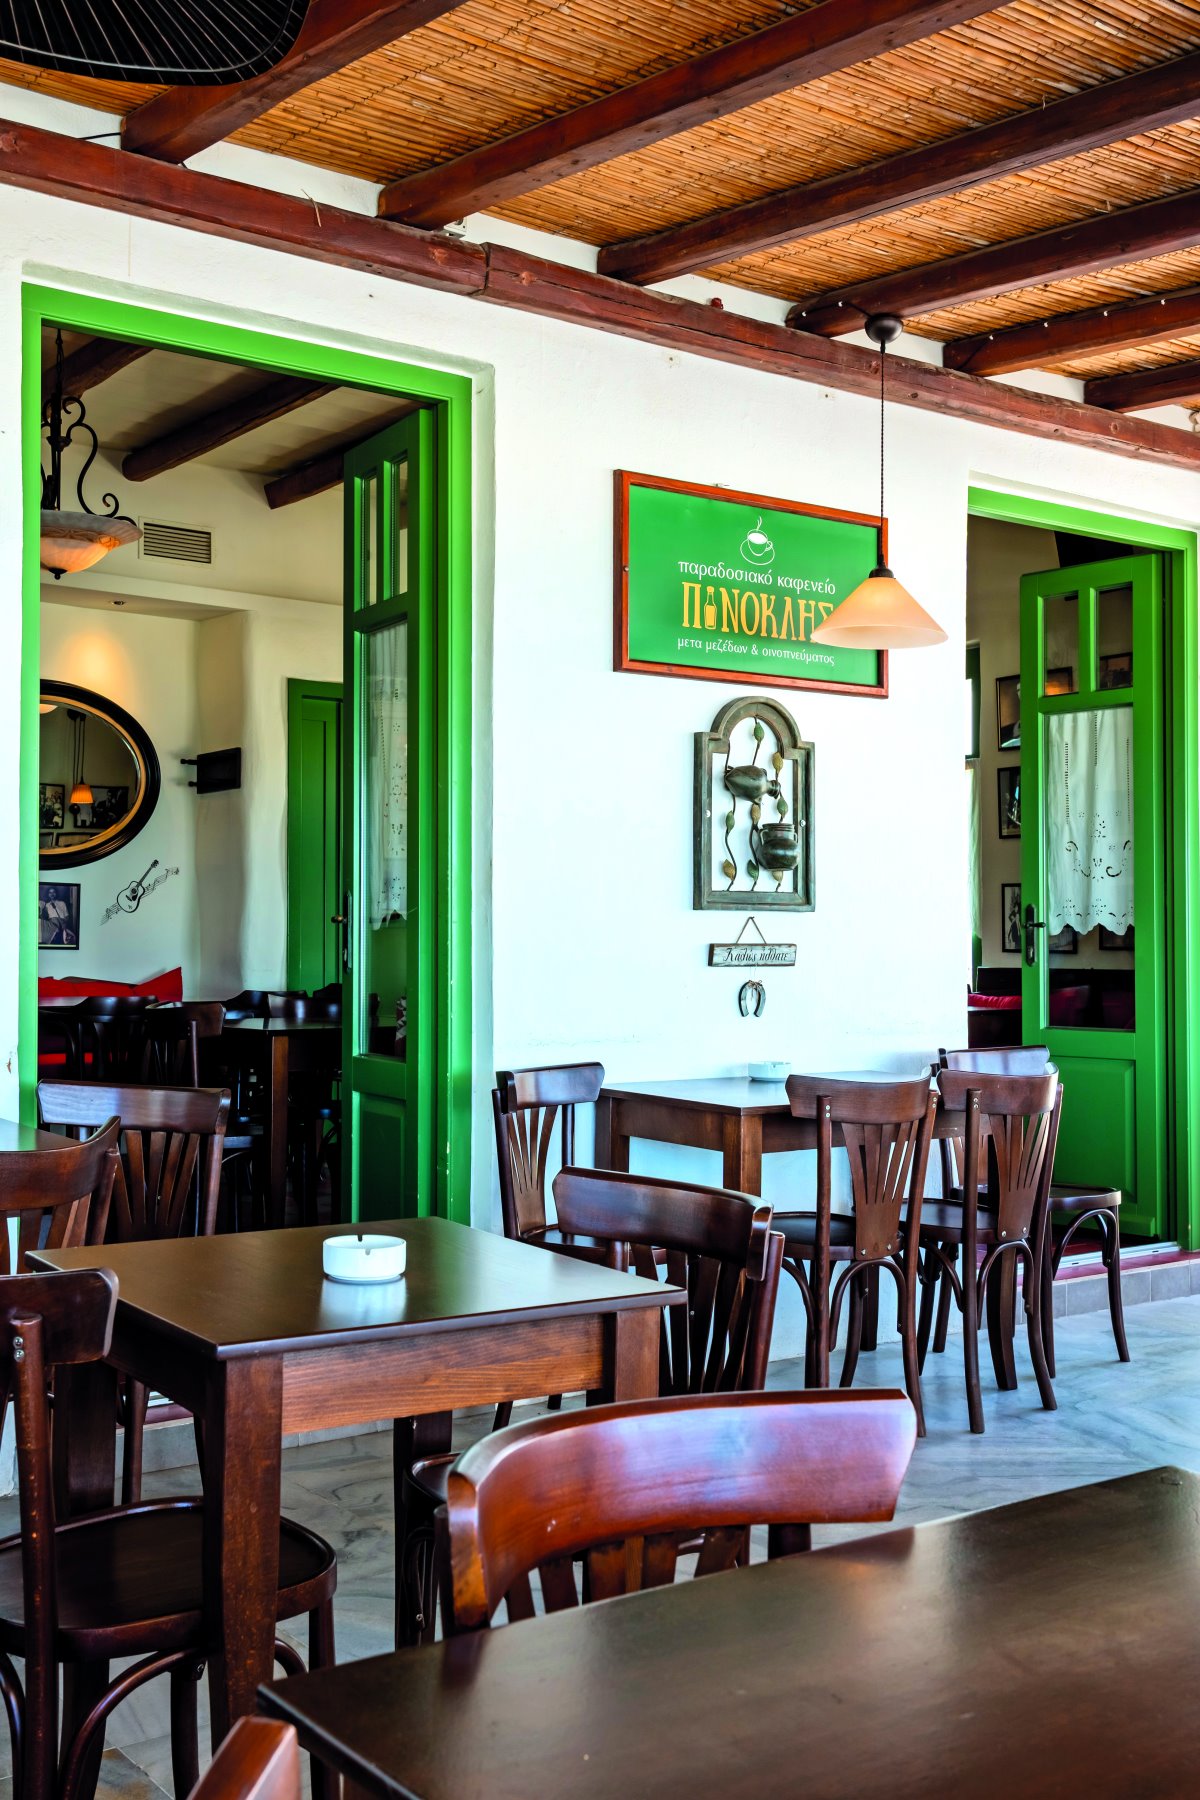 Πινόκλης, παραδοσιακό καφενείο στην Παροικιά 